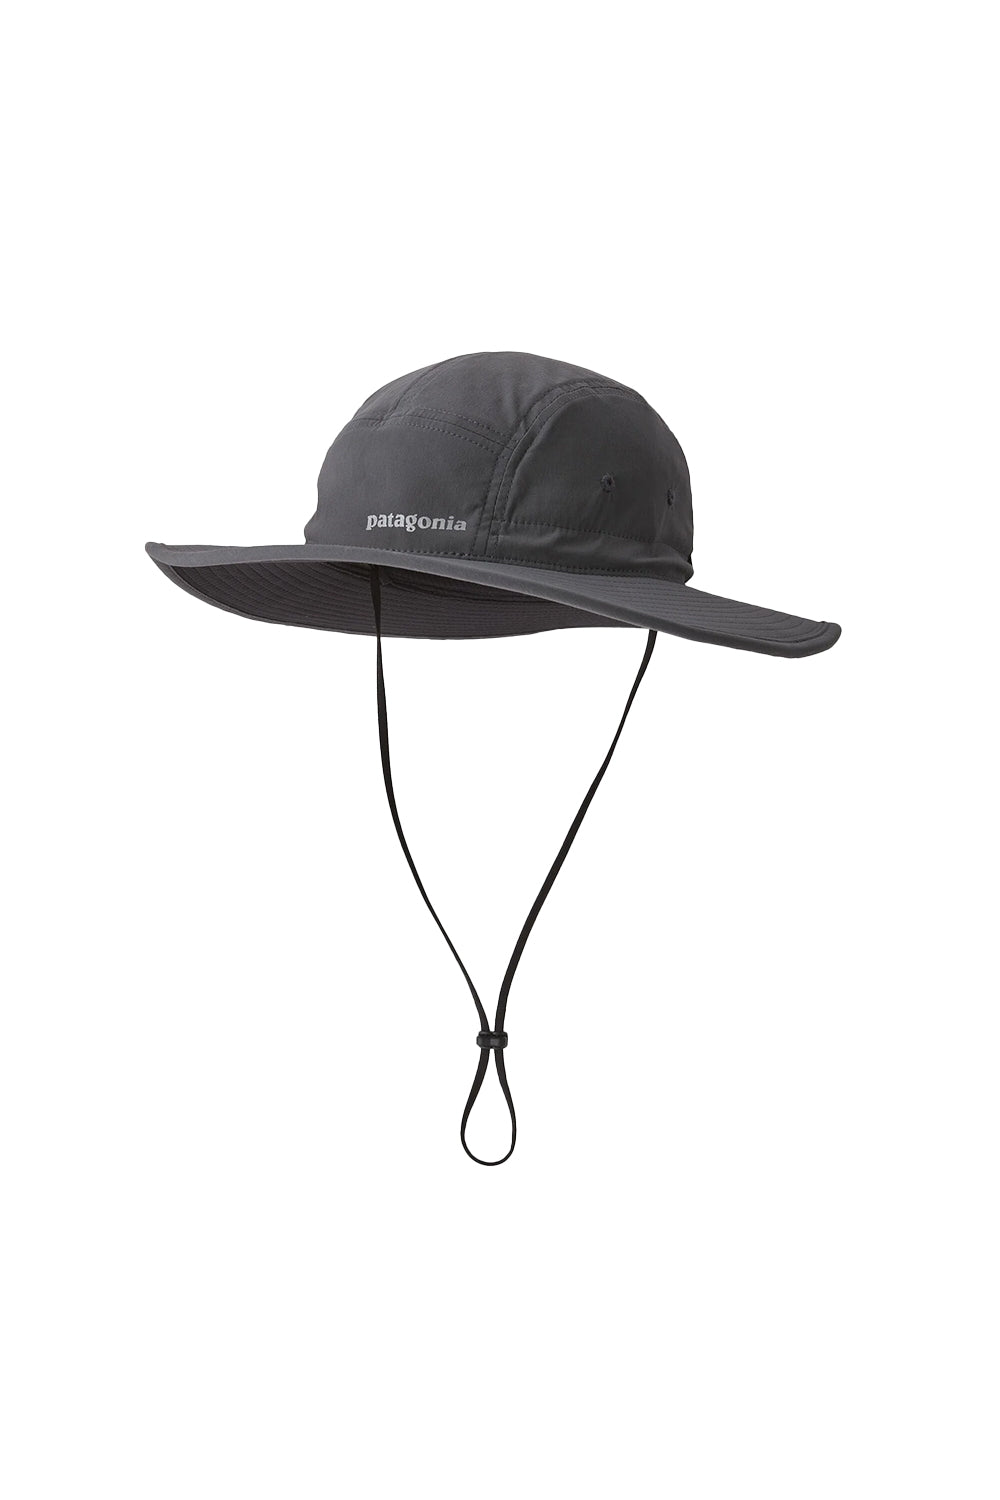 Patagonia Quandary Brimmer Hat – Sanbah Australia